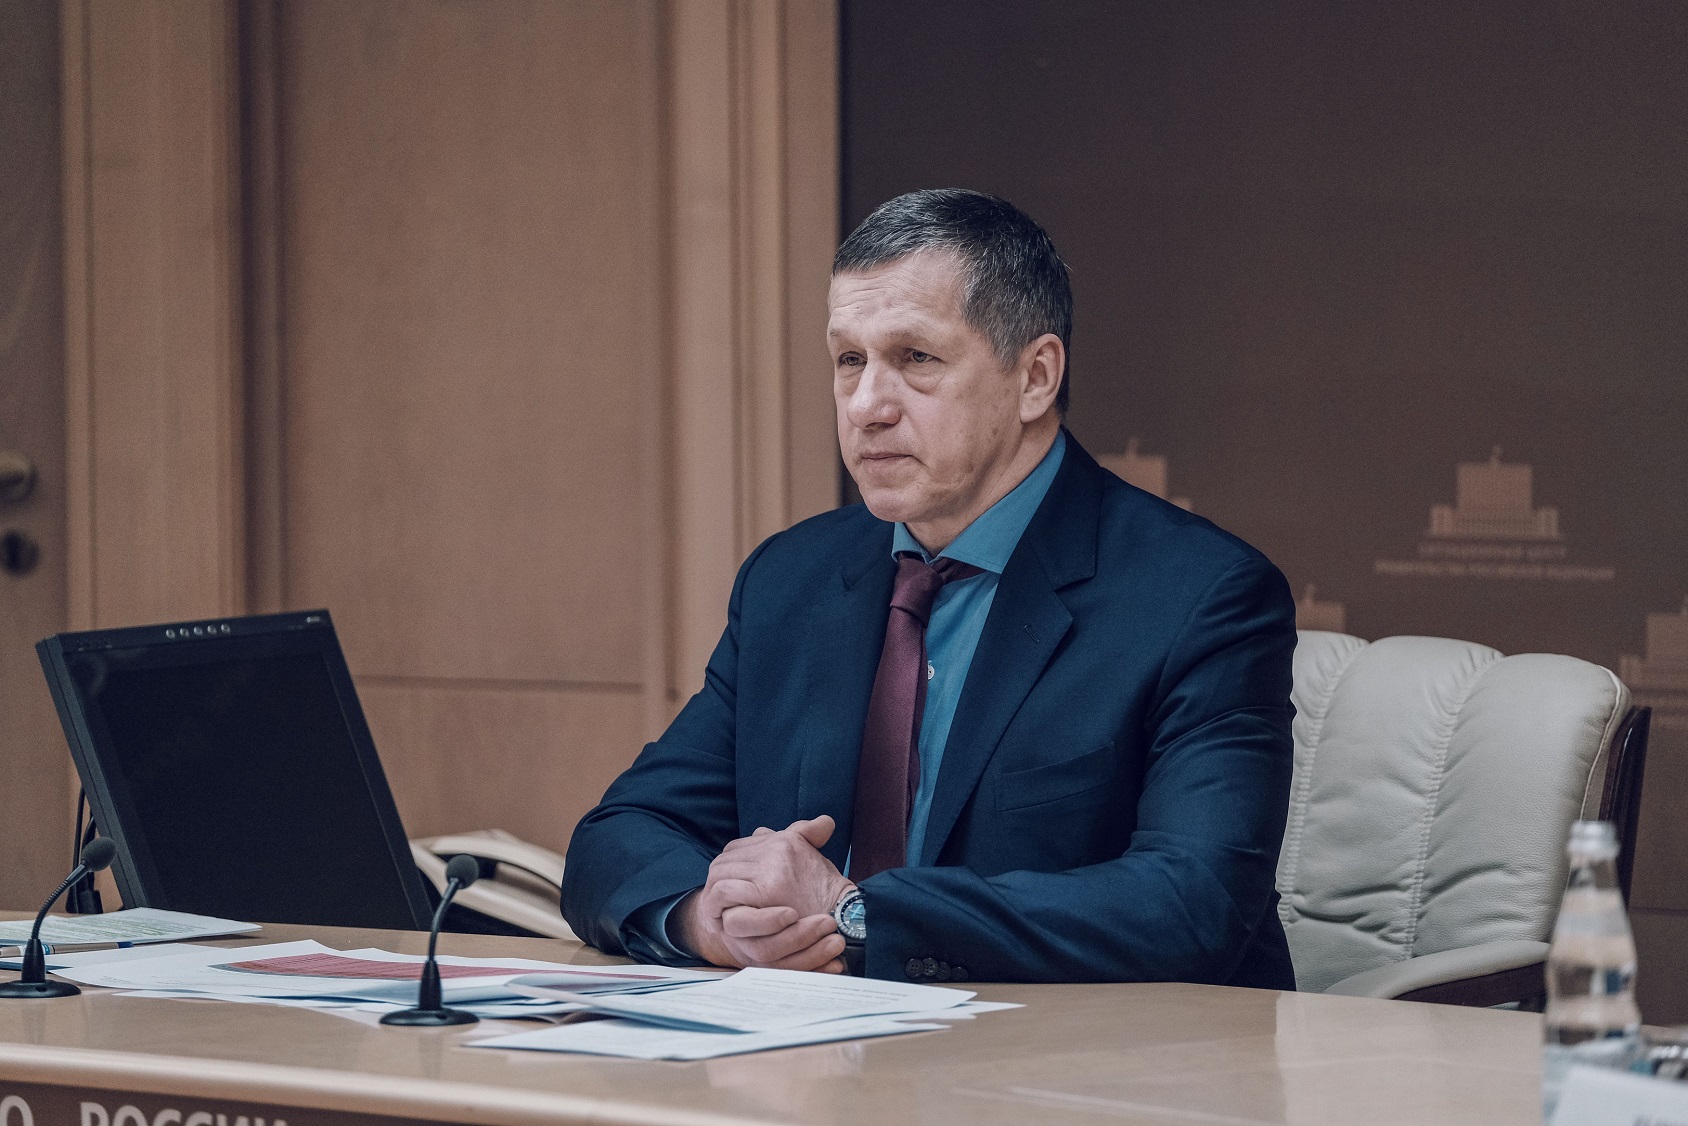 Утверждено распределение обязанностей между вице-премьерами: ДФО и ЕАО в том числе закреплены за Юрием Трутневым